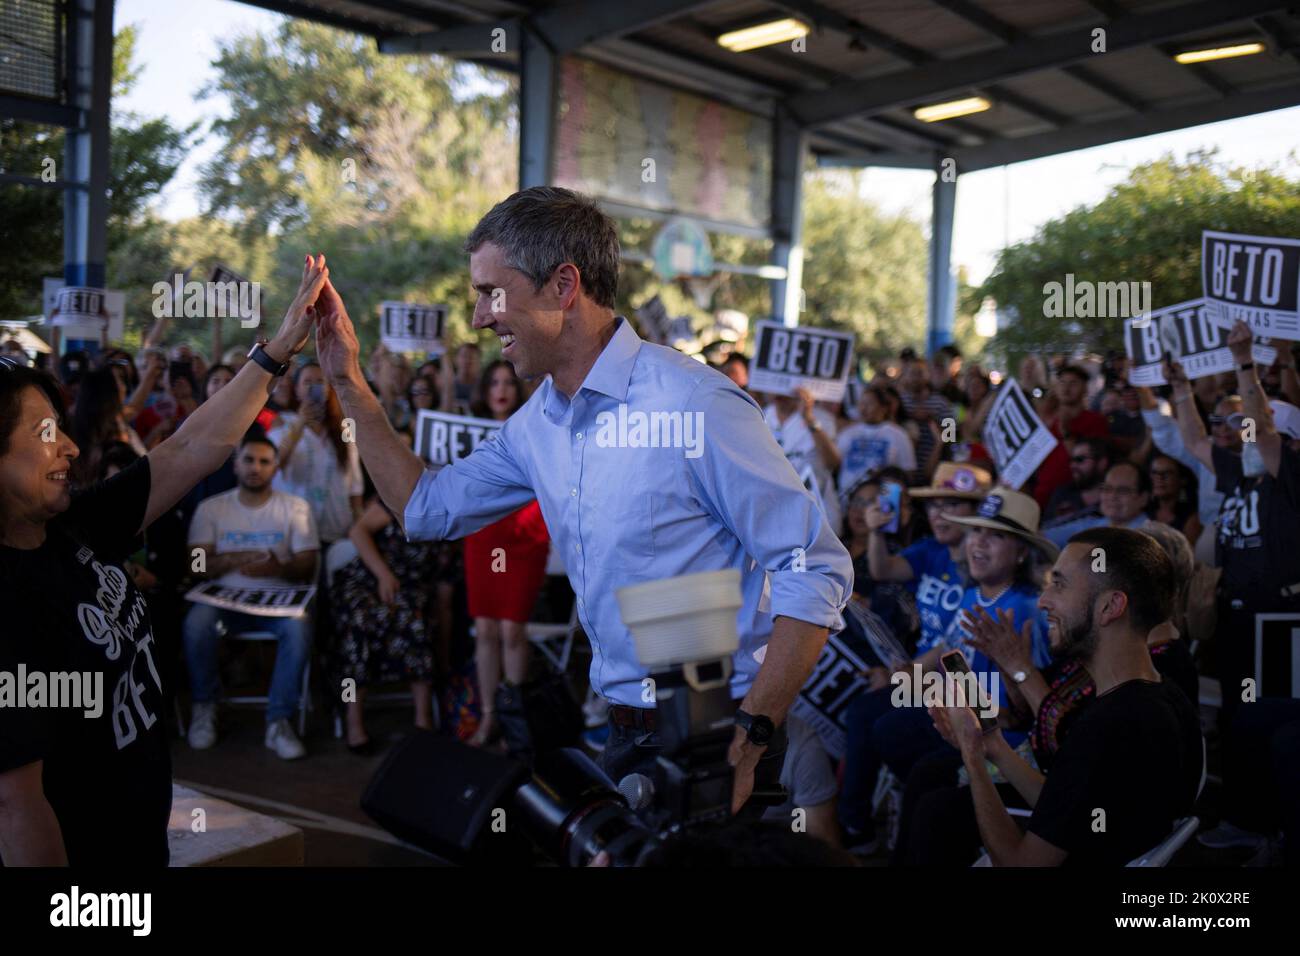 Le candidat au poste de gouverneur démocrate du Texas et l'ancien congressiste américain Beto O'Rourke salue un partisan lors d'un événement de campagne à Houston, au Texas, aux États-Unis, en 13 septembre 2022. REUTERS/adrees Latif Banque D'Images